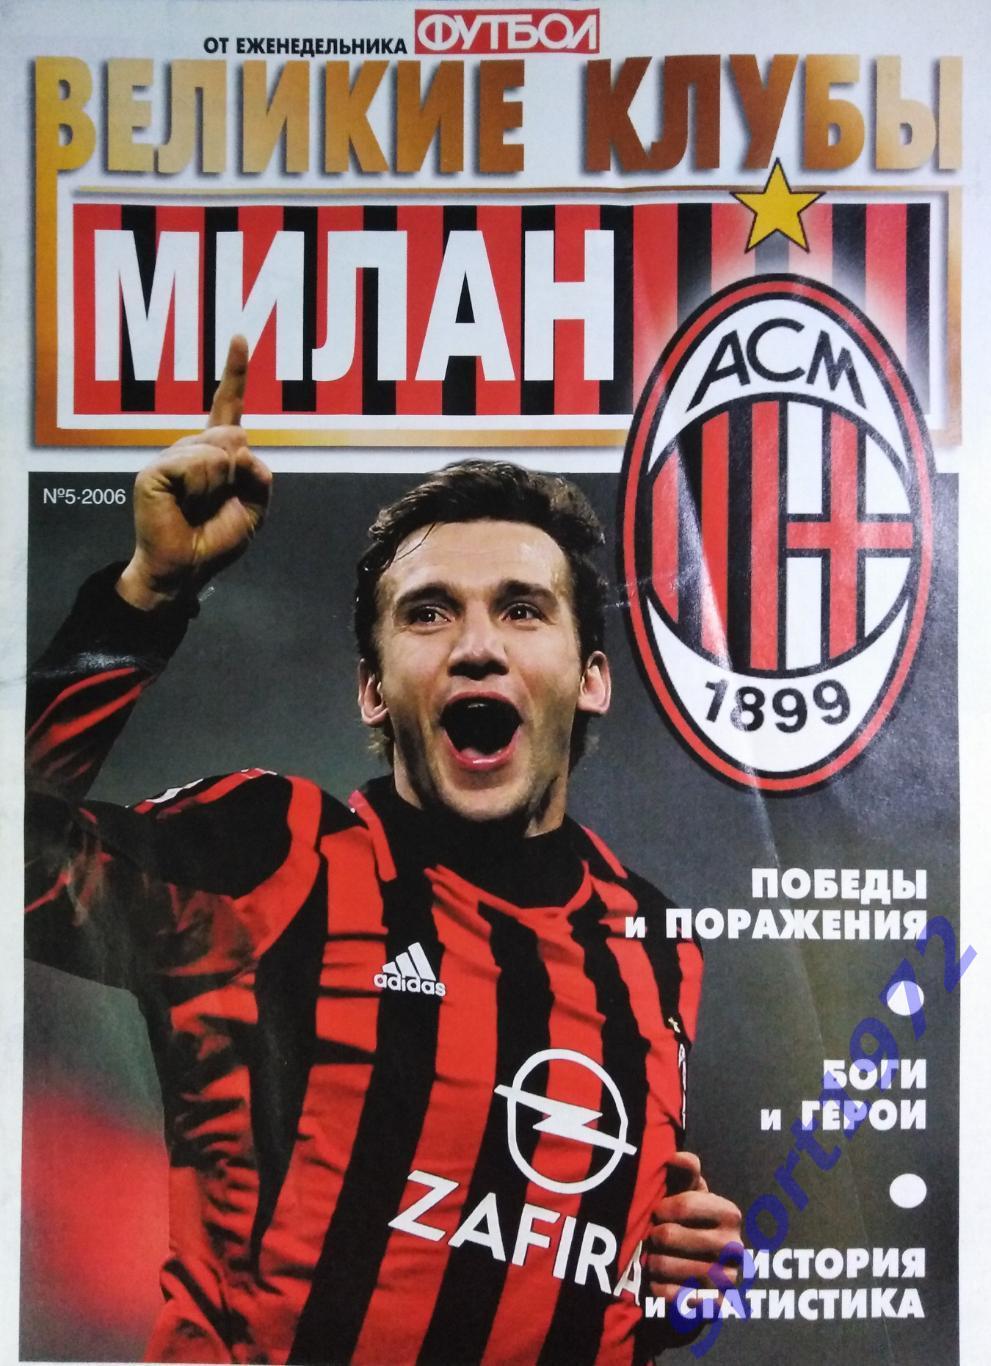 Еженедельник Футбол. Великие клубы. Милан. №5 - 2006. (Без постера).